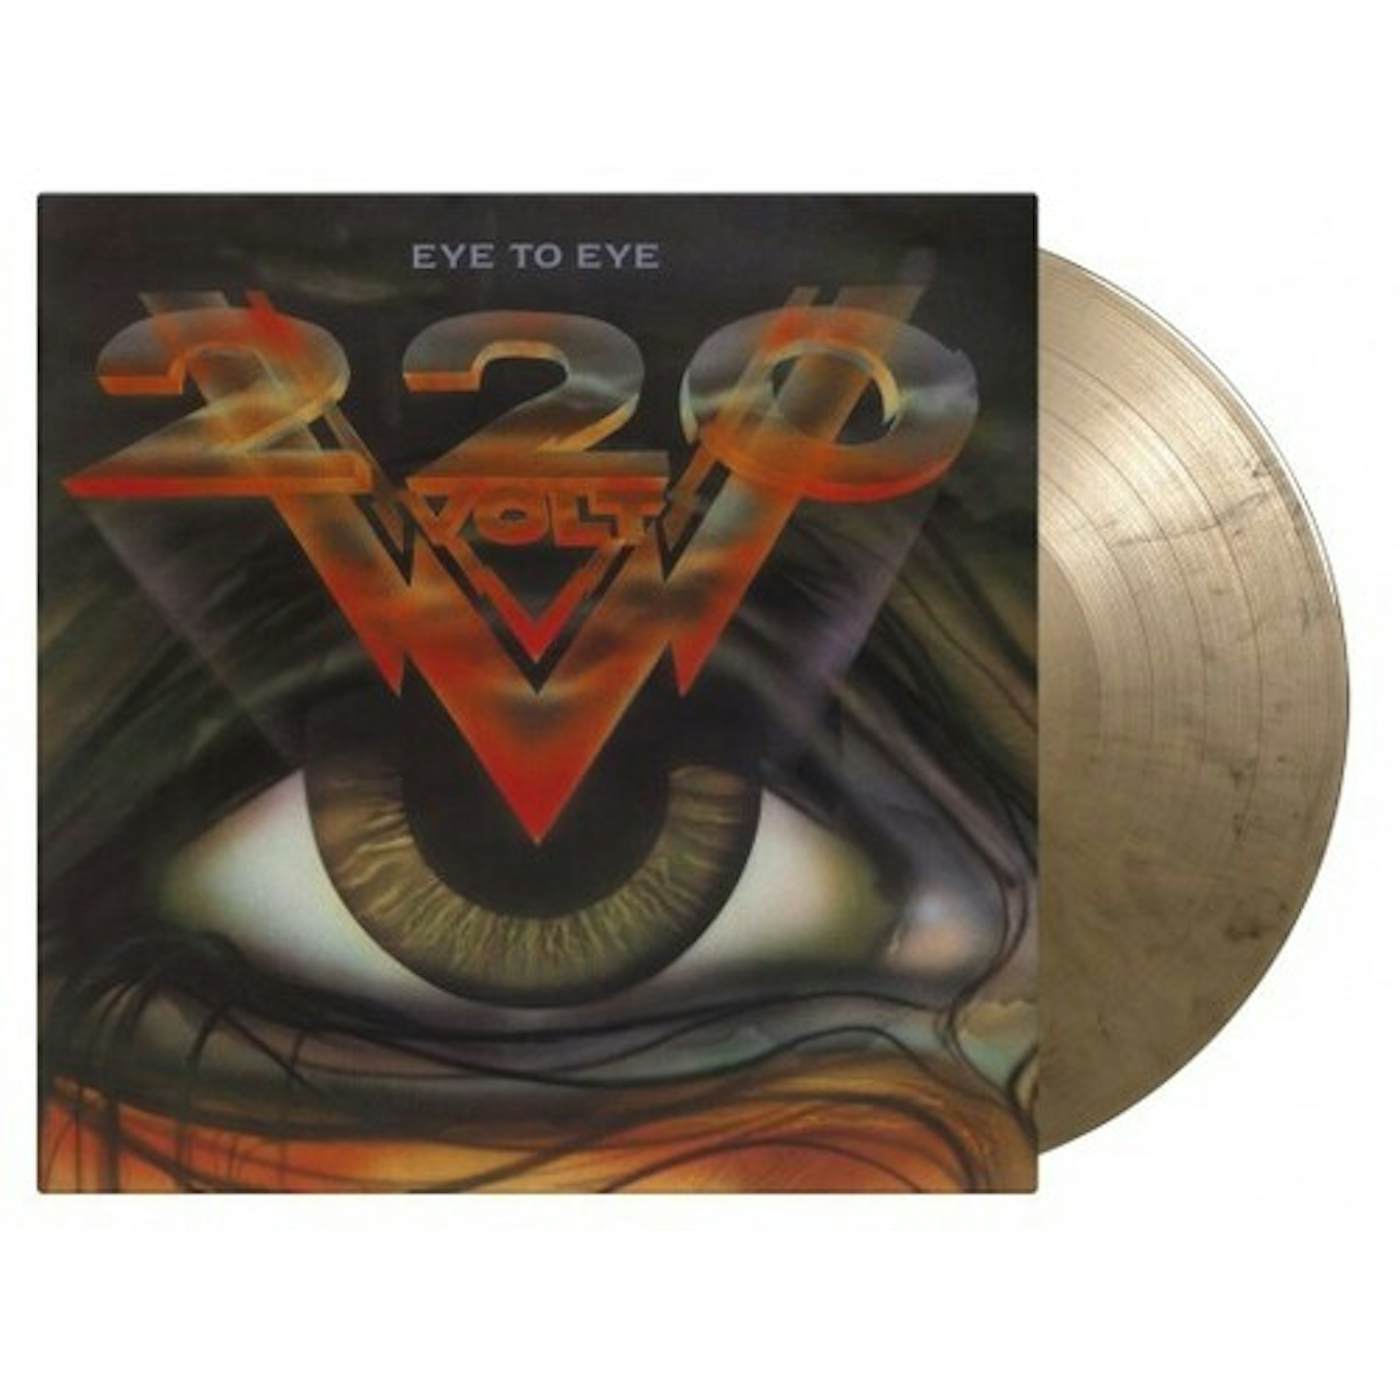 220 Volt Eye To Eye vinyl record